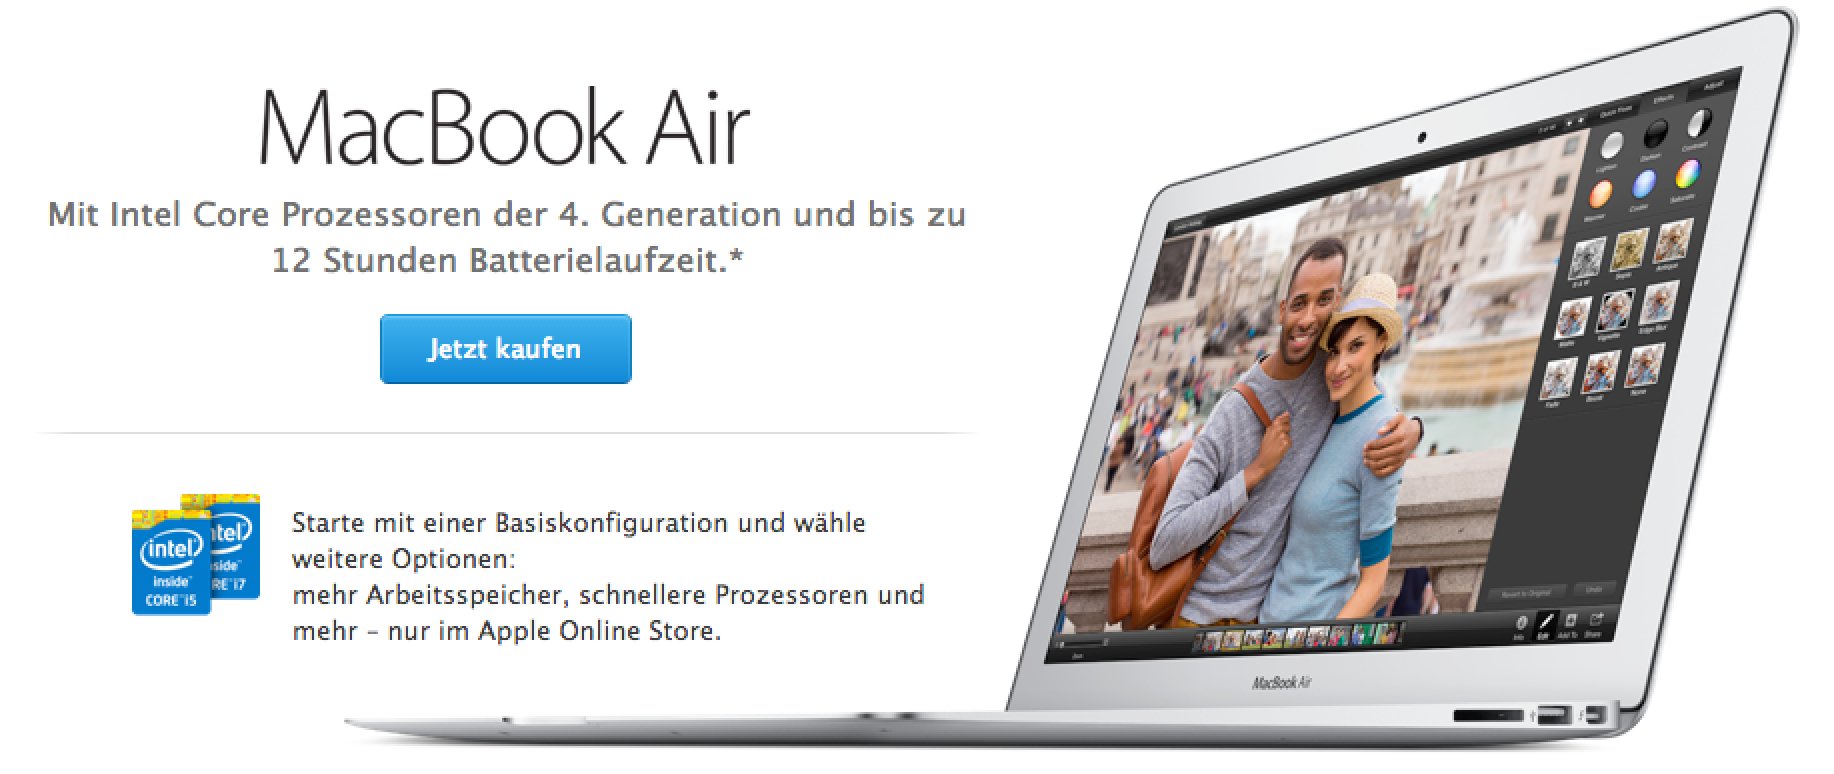 Macbook Air 2014 ist da - schneller und 100 Euro billiger! 1